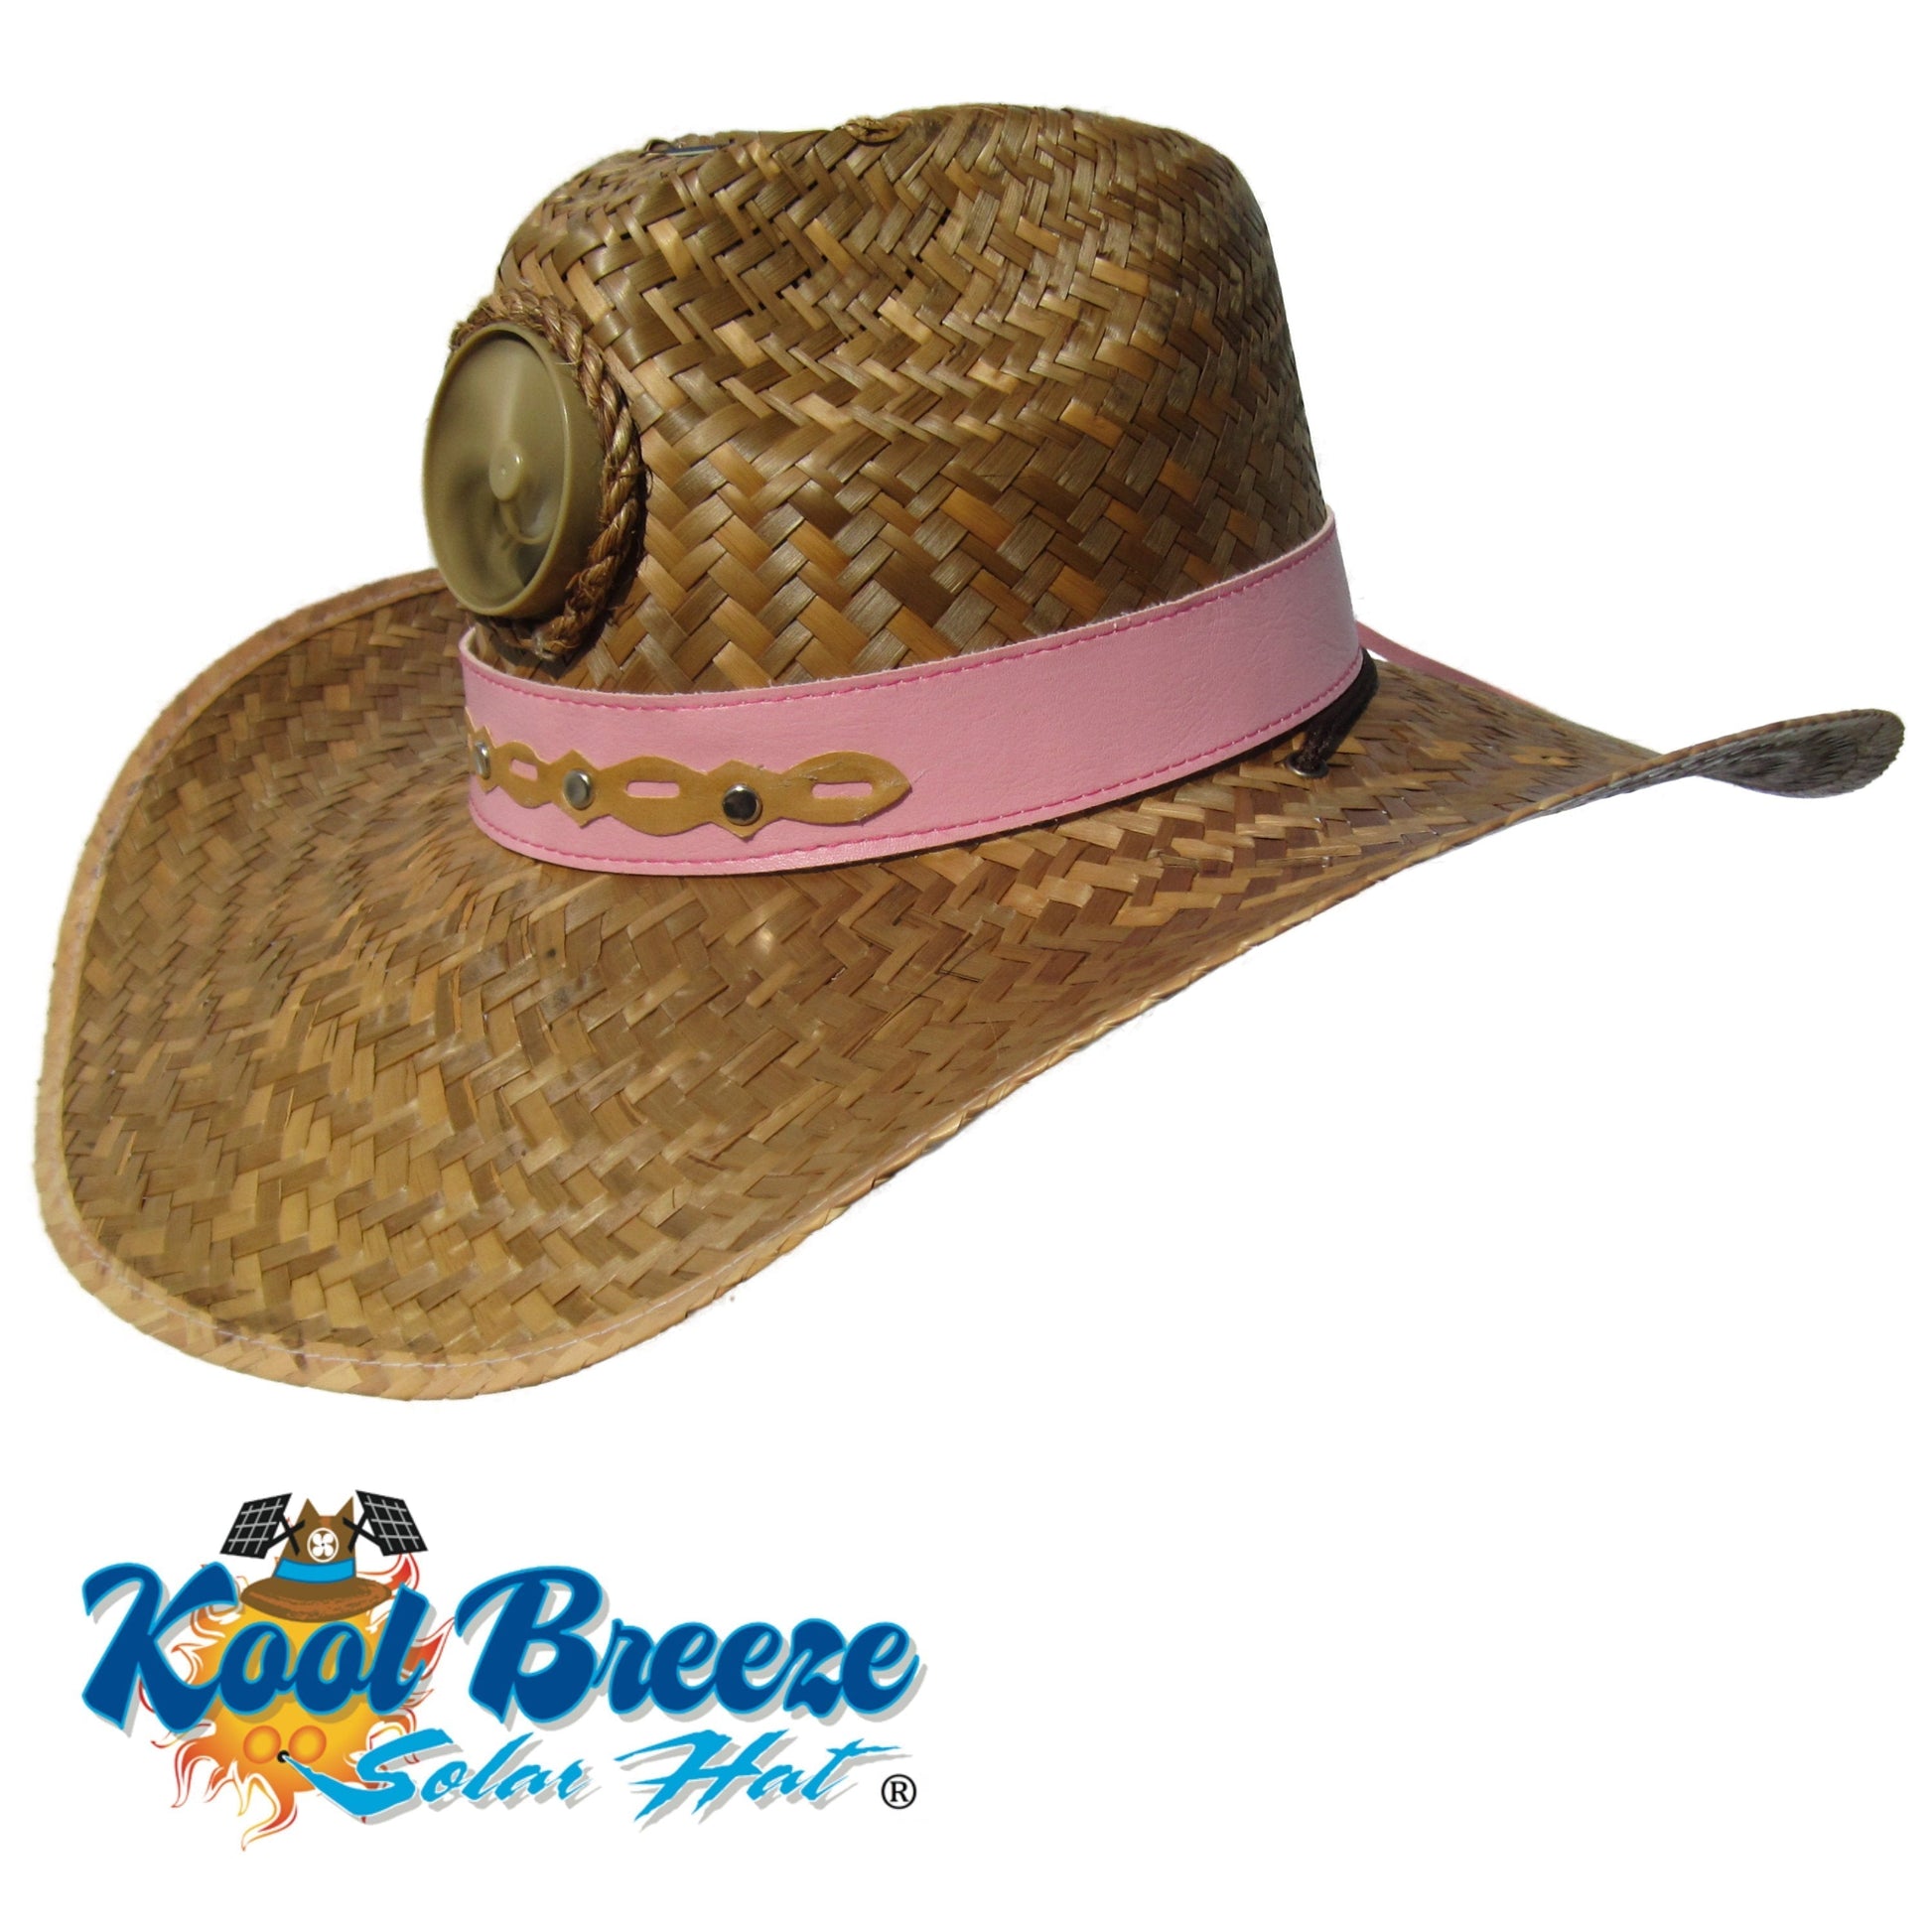 Kool Breeze Solar Lady's Gentlemen Brown Straw Hat (Band) – Kool